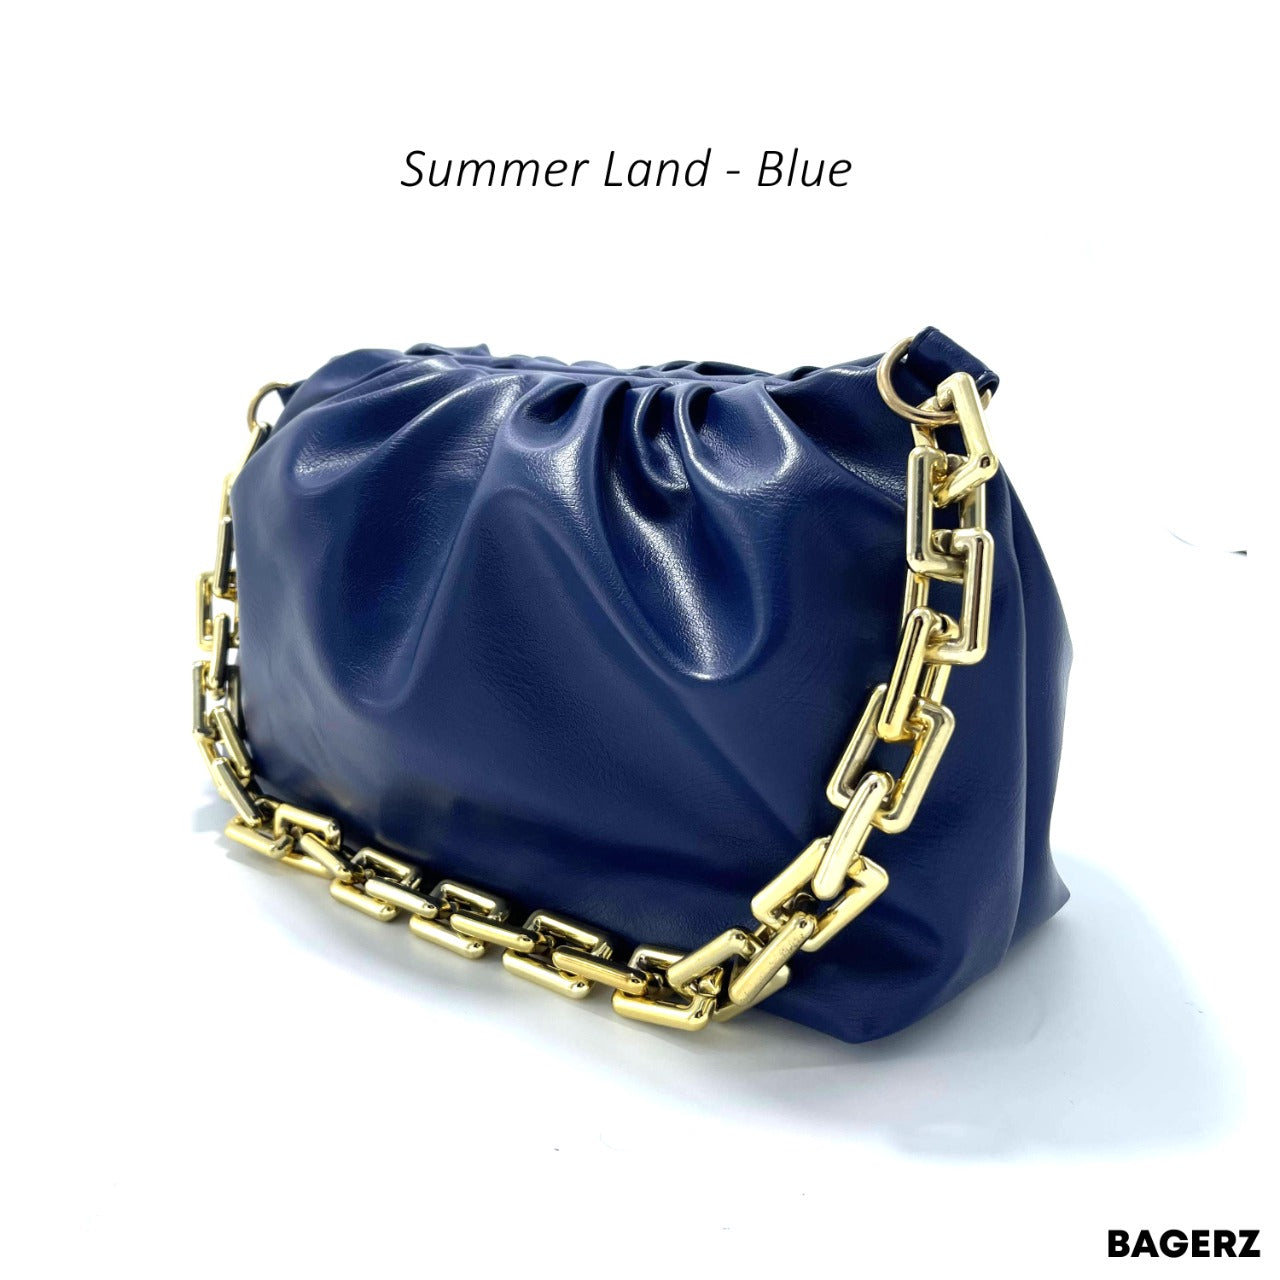 Summer Land - Blue